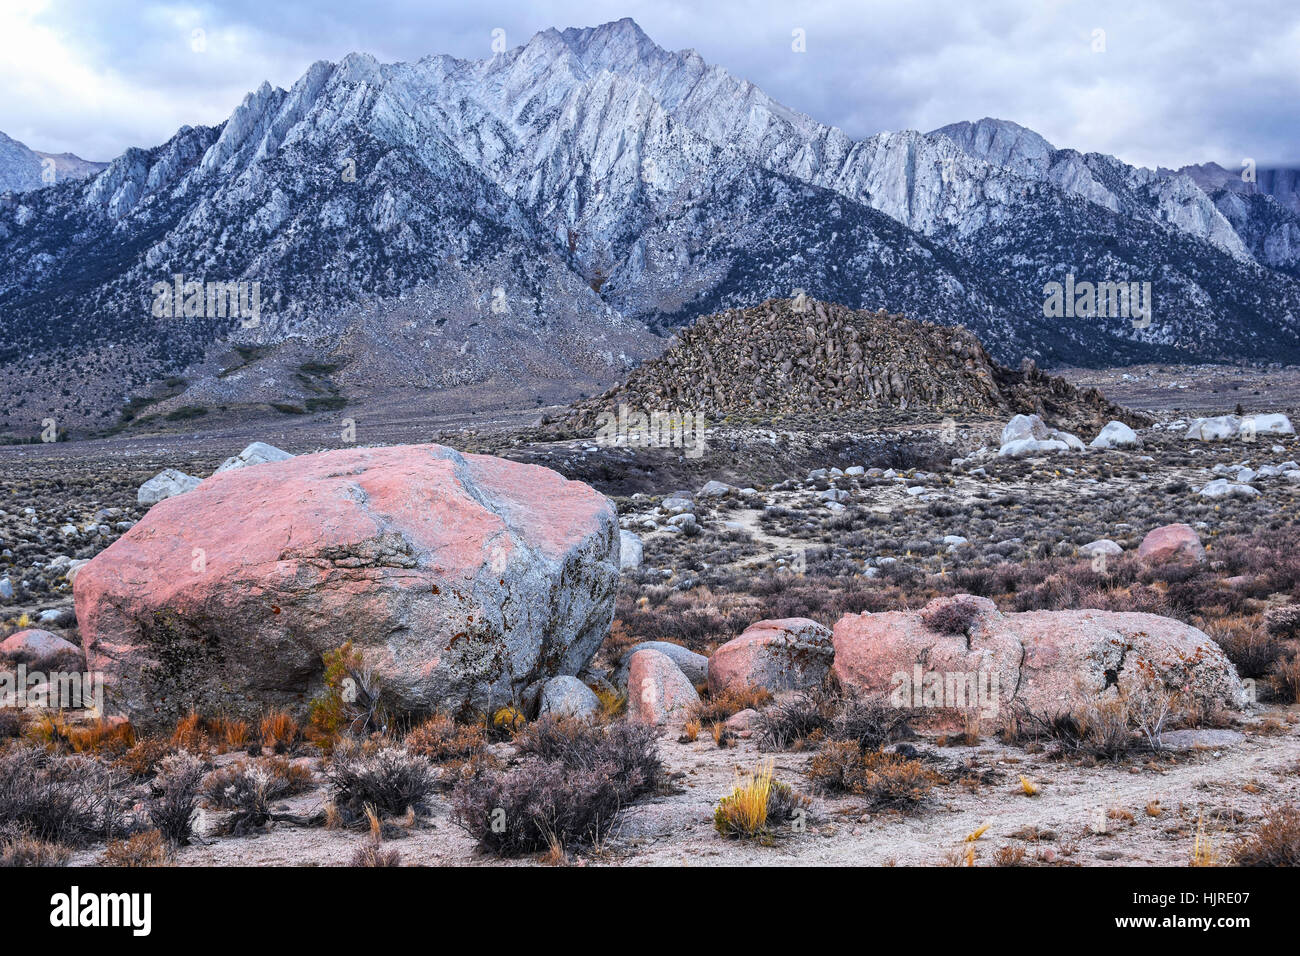 Die Berge der Sierra Nevada in Alabama Hills, nahe der Stadt von Lone Pine, Kalifornien, USA. Felsen im Vordergrund bedeckt mit roten Mikro-Organismen. Stockfoto